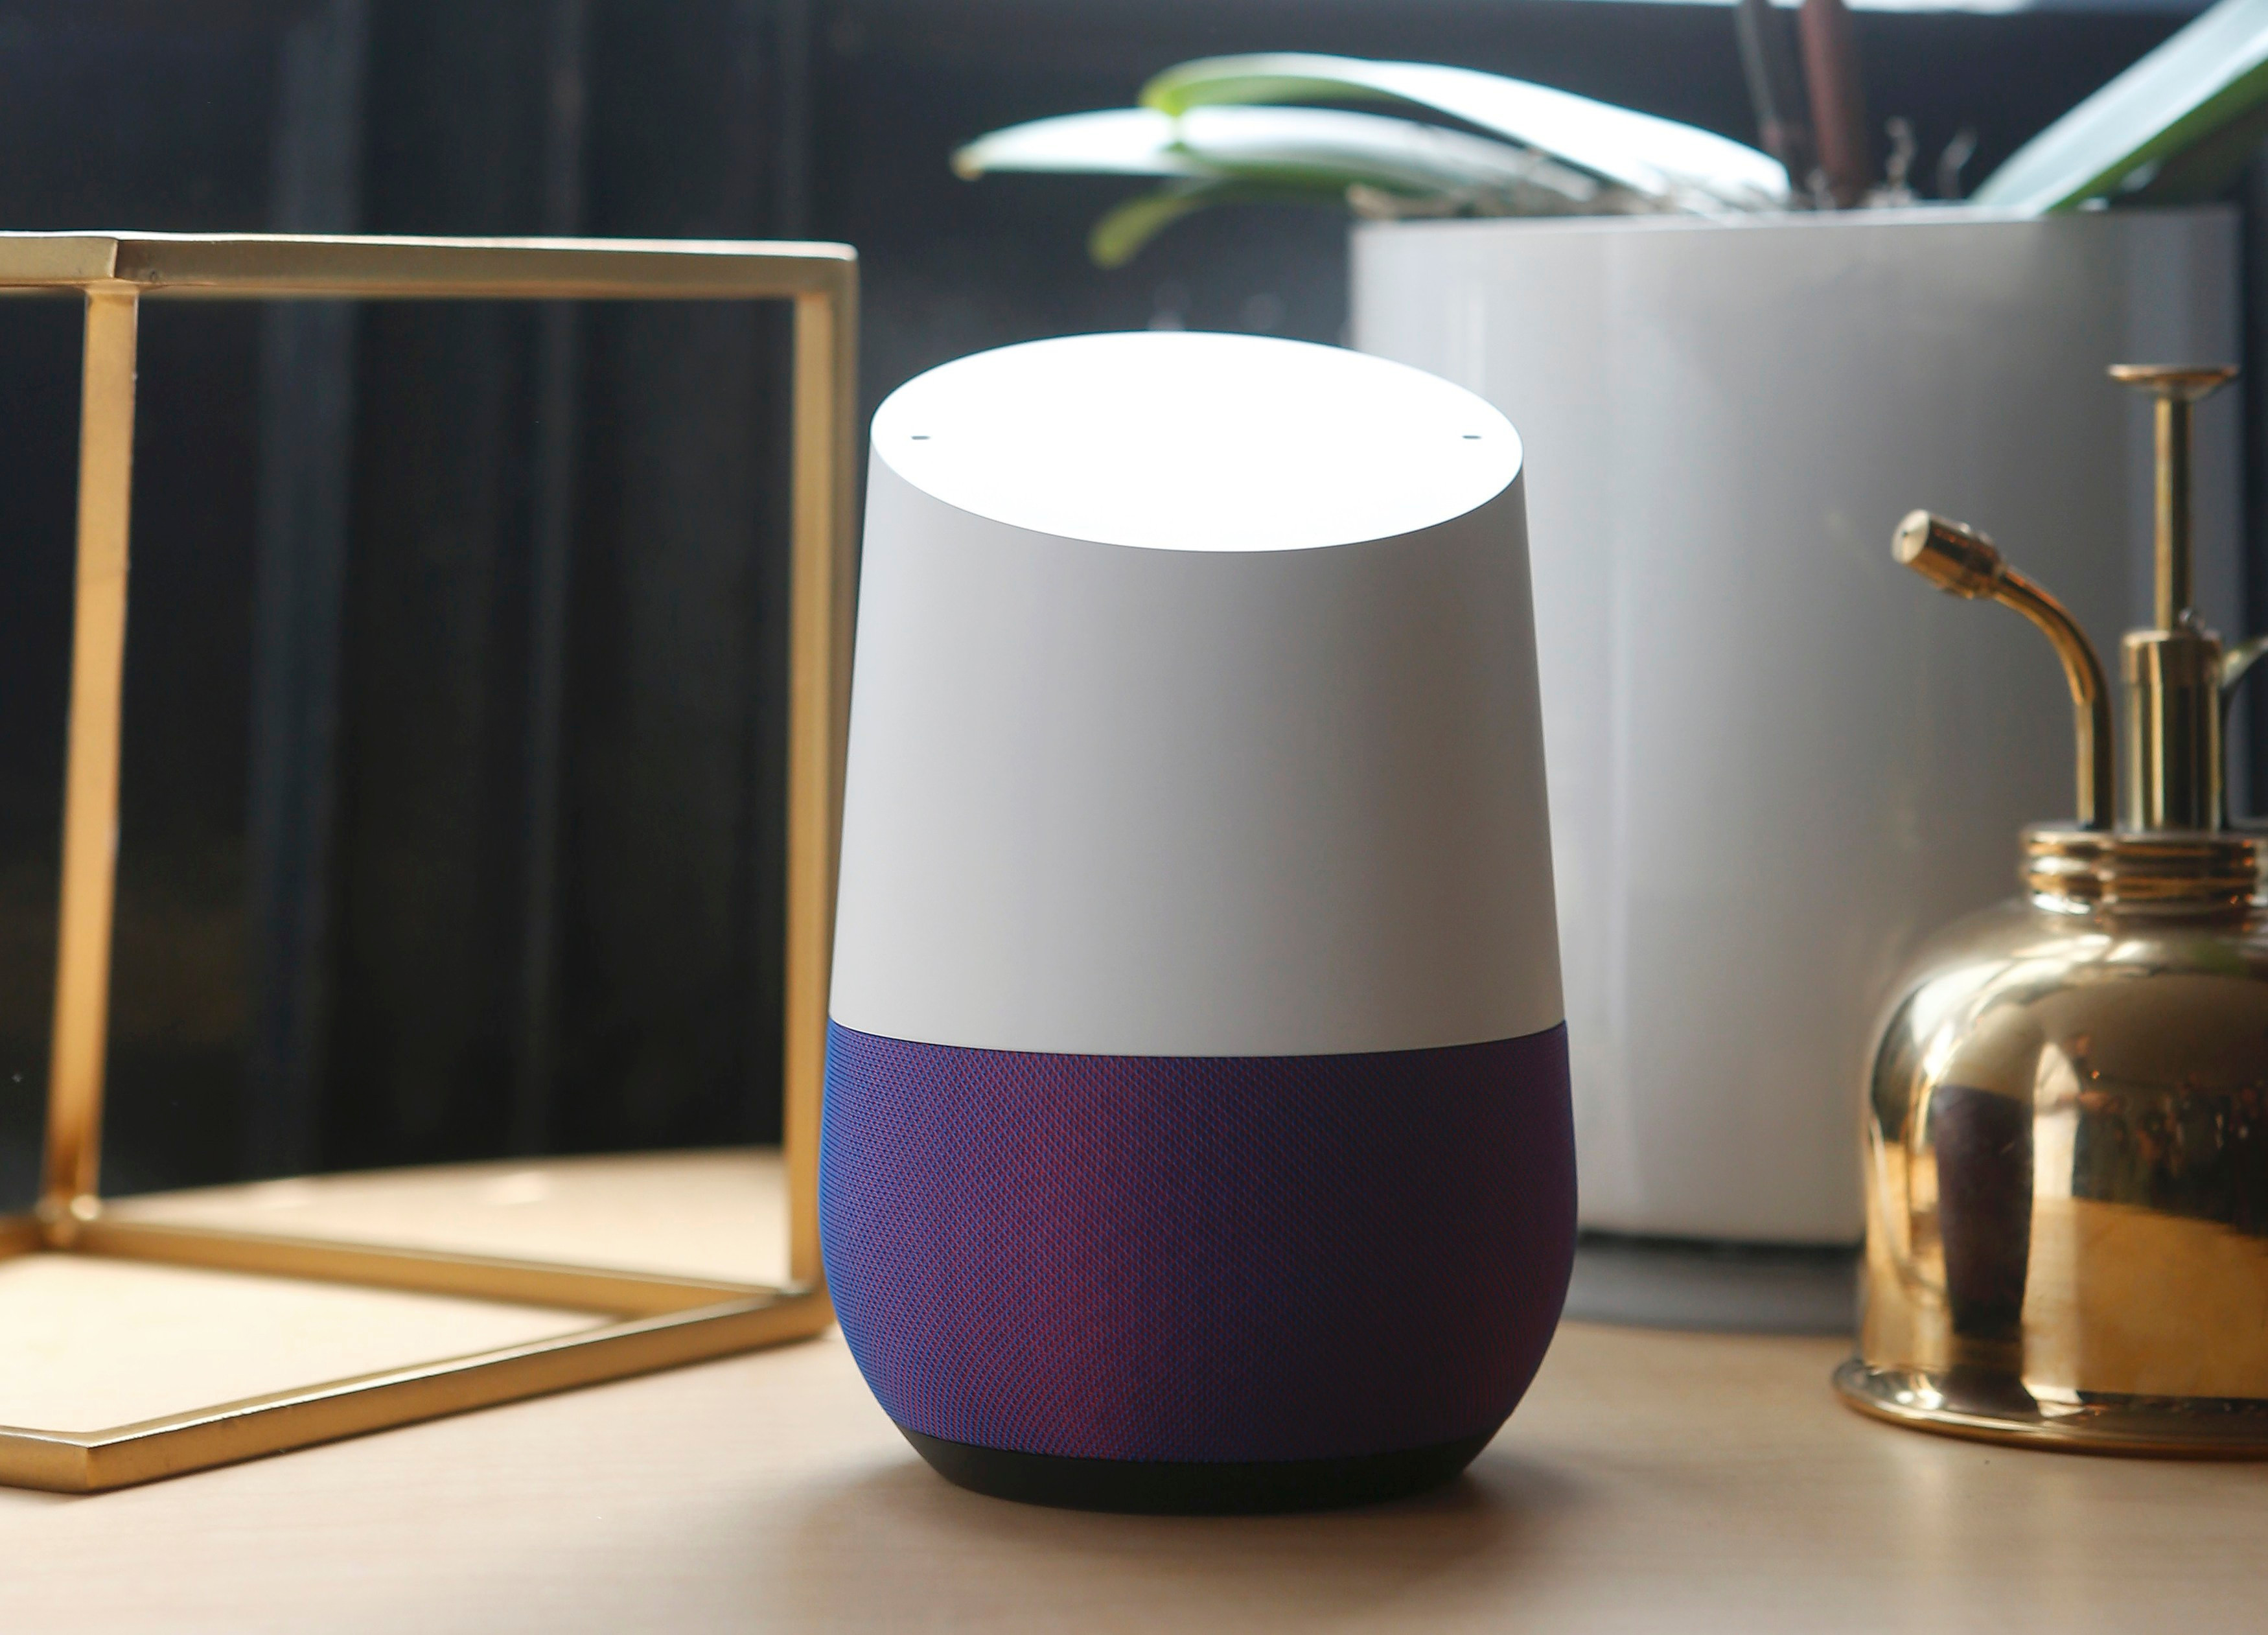  Gadget yang terlihat polos ini disebut Google Home dan selalu mendengarkan pesanan pemiliknya